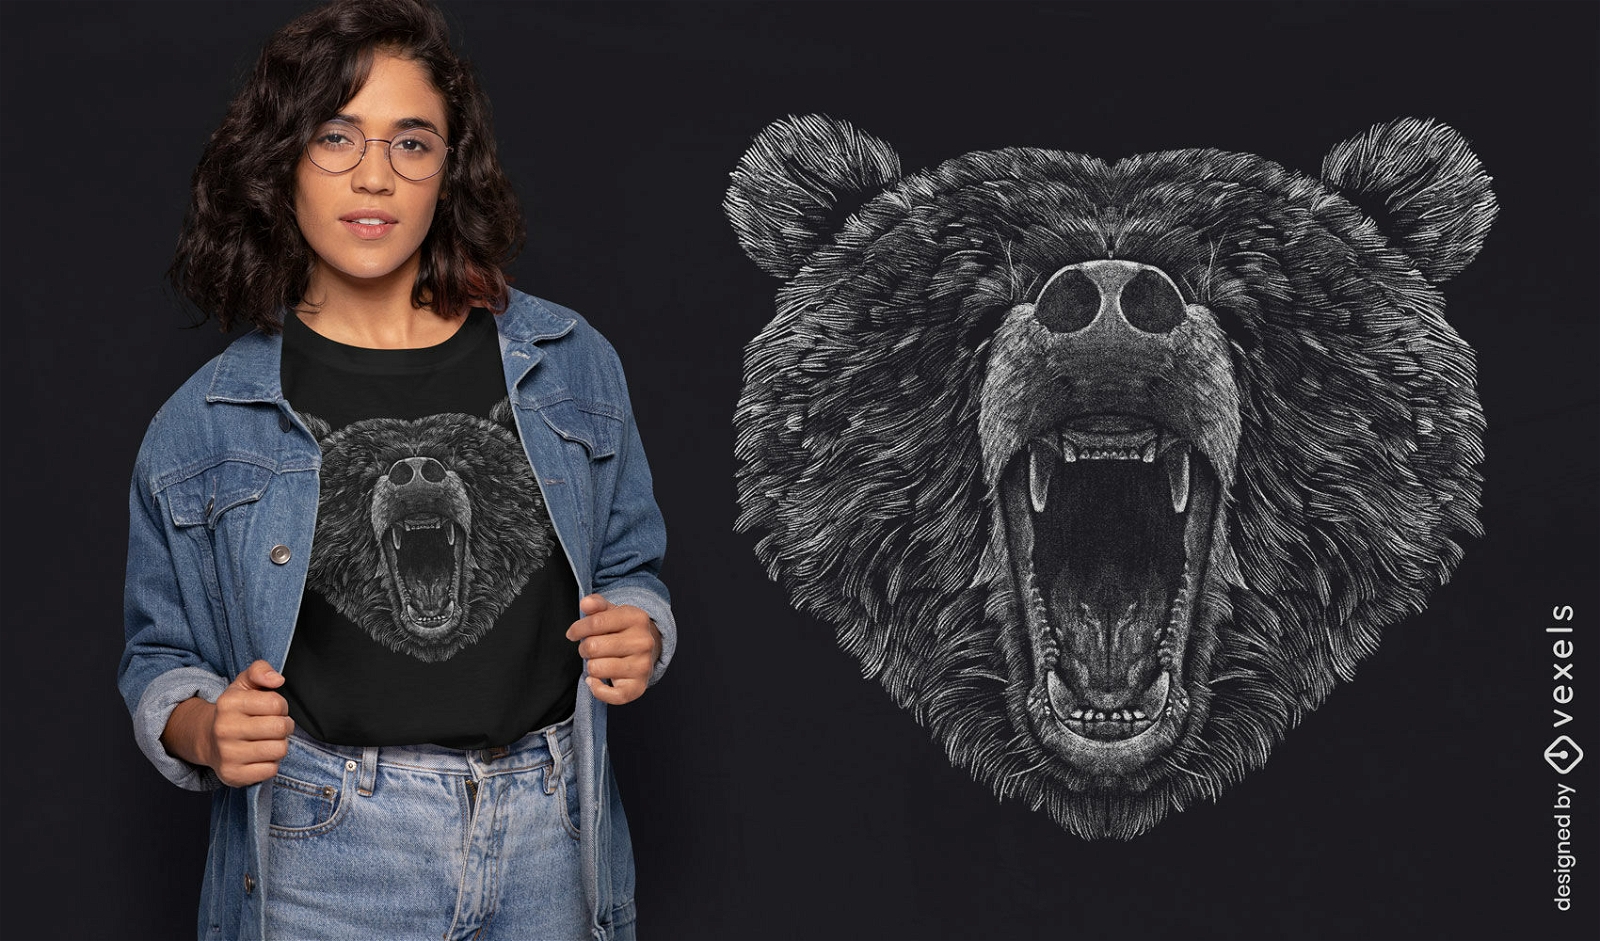 Dise?o de camiseta realista con cabeza de oso.